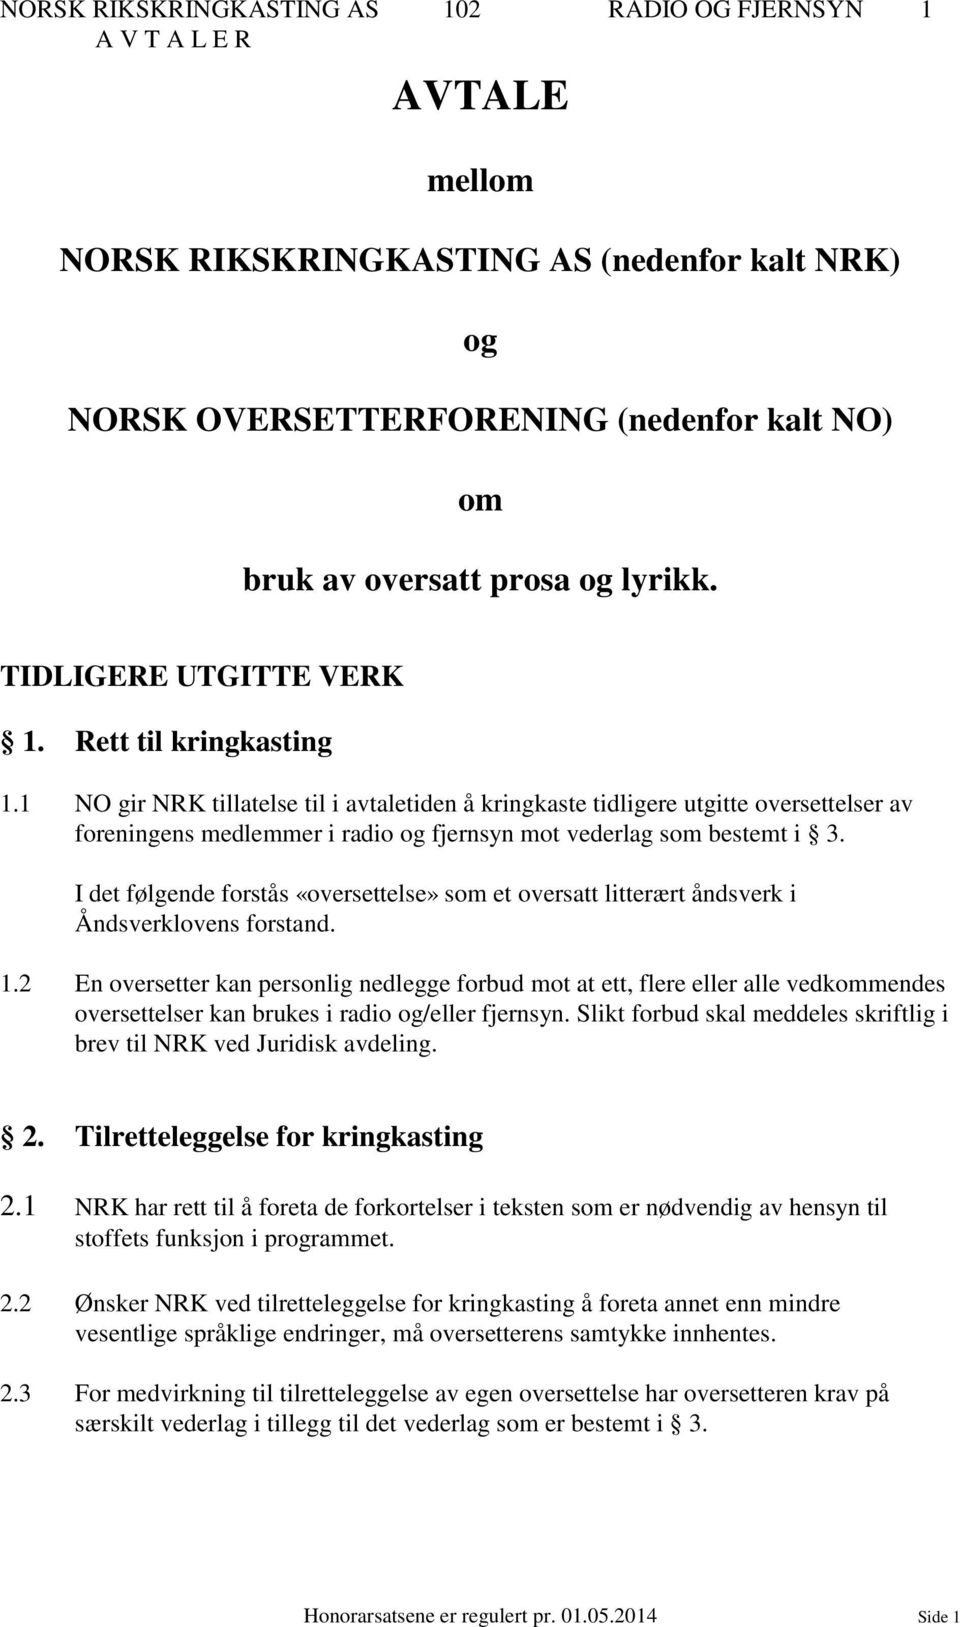 1 NO gir NRK tillatelse til i avtaletiden å kringkaste tidligere utgitte oversettelser av foreningens medlemmer i radio og fjernsyn mot vederlag som bestemt i 3.